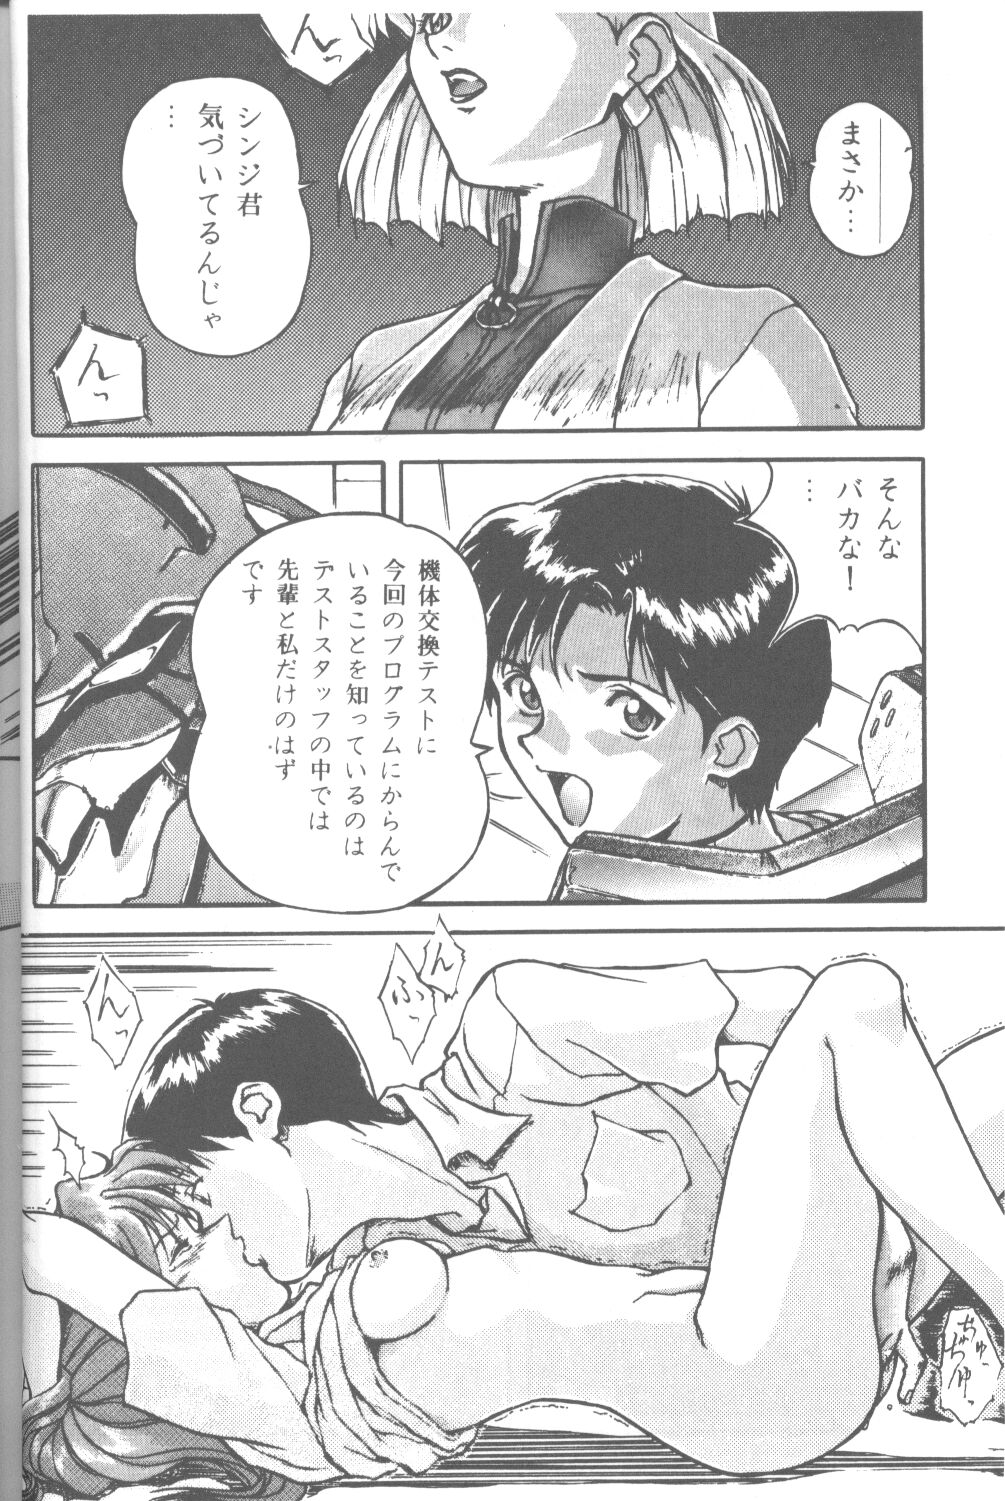 [Takahiro Kutugi] Friends Yes We're (Evangelion) page 15 full